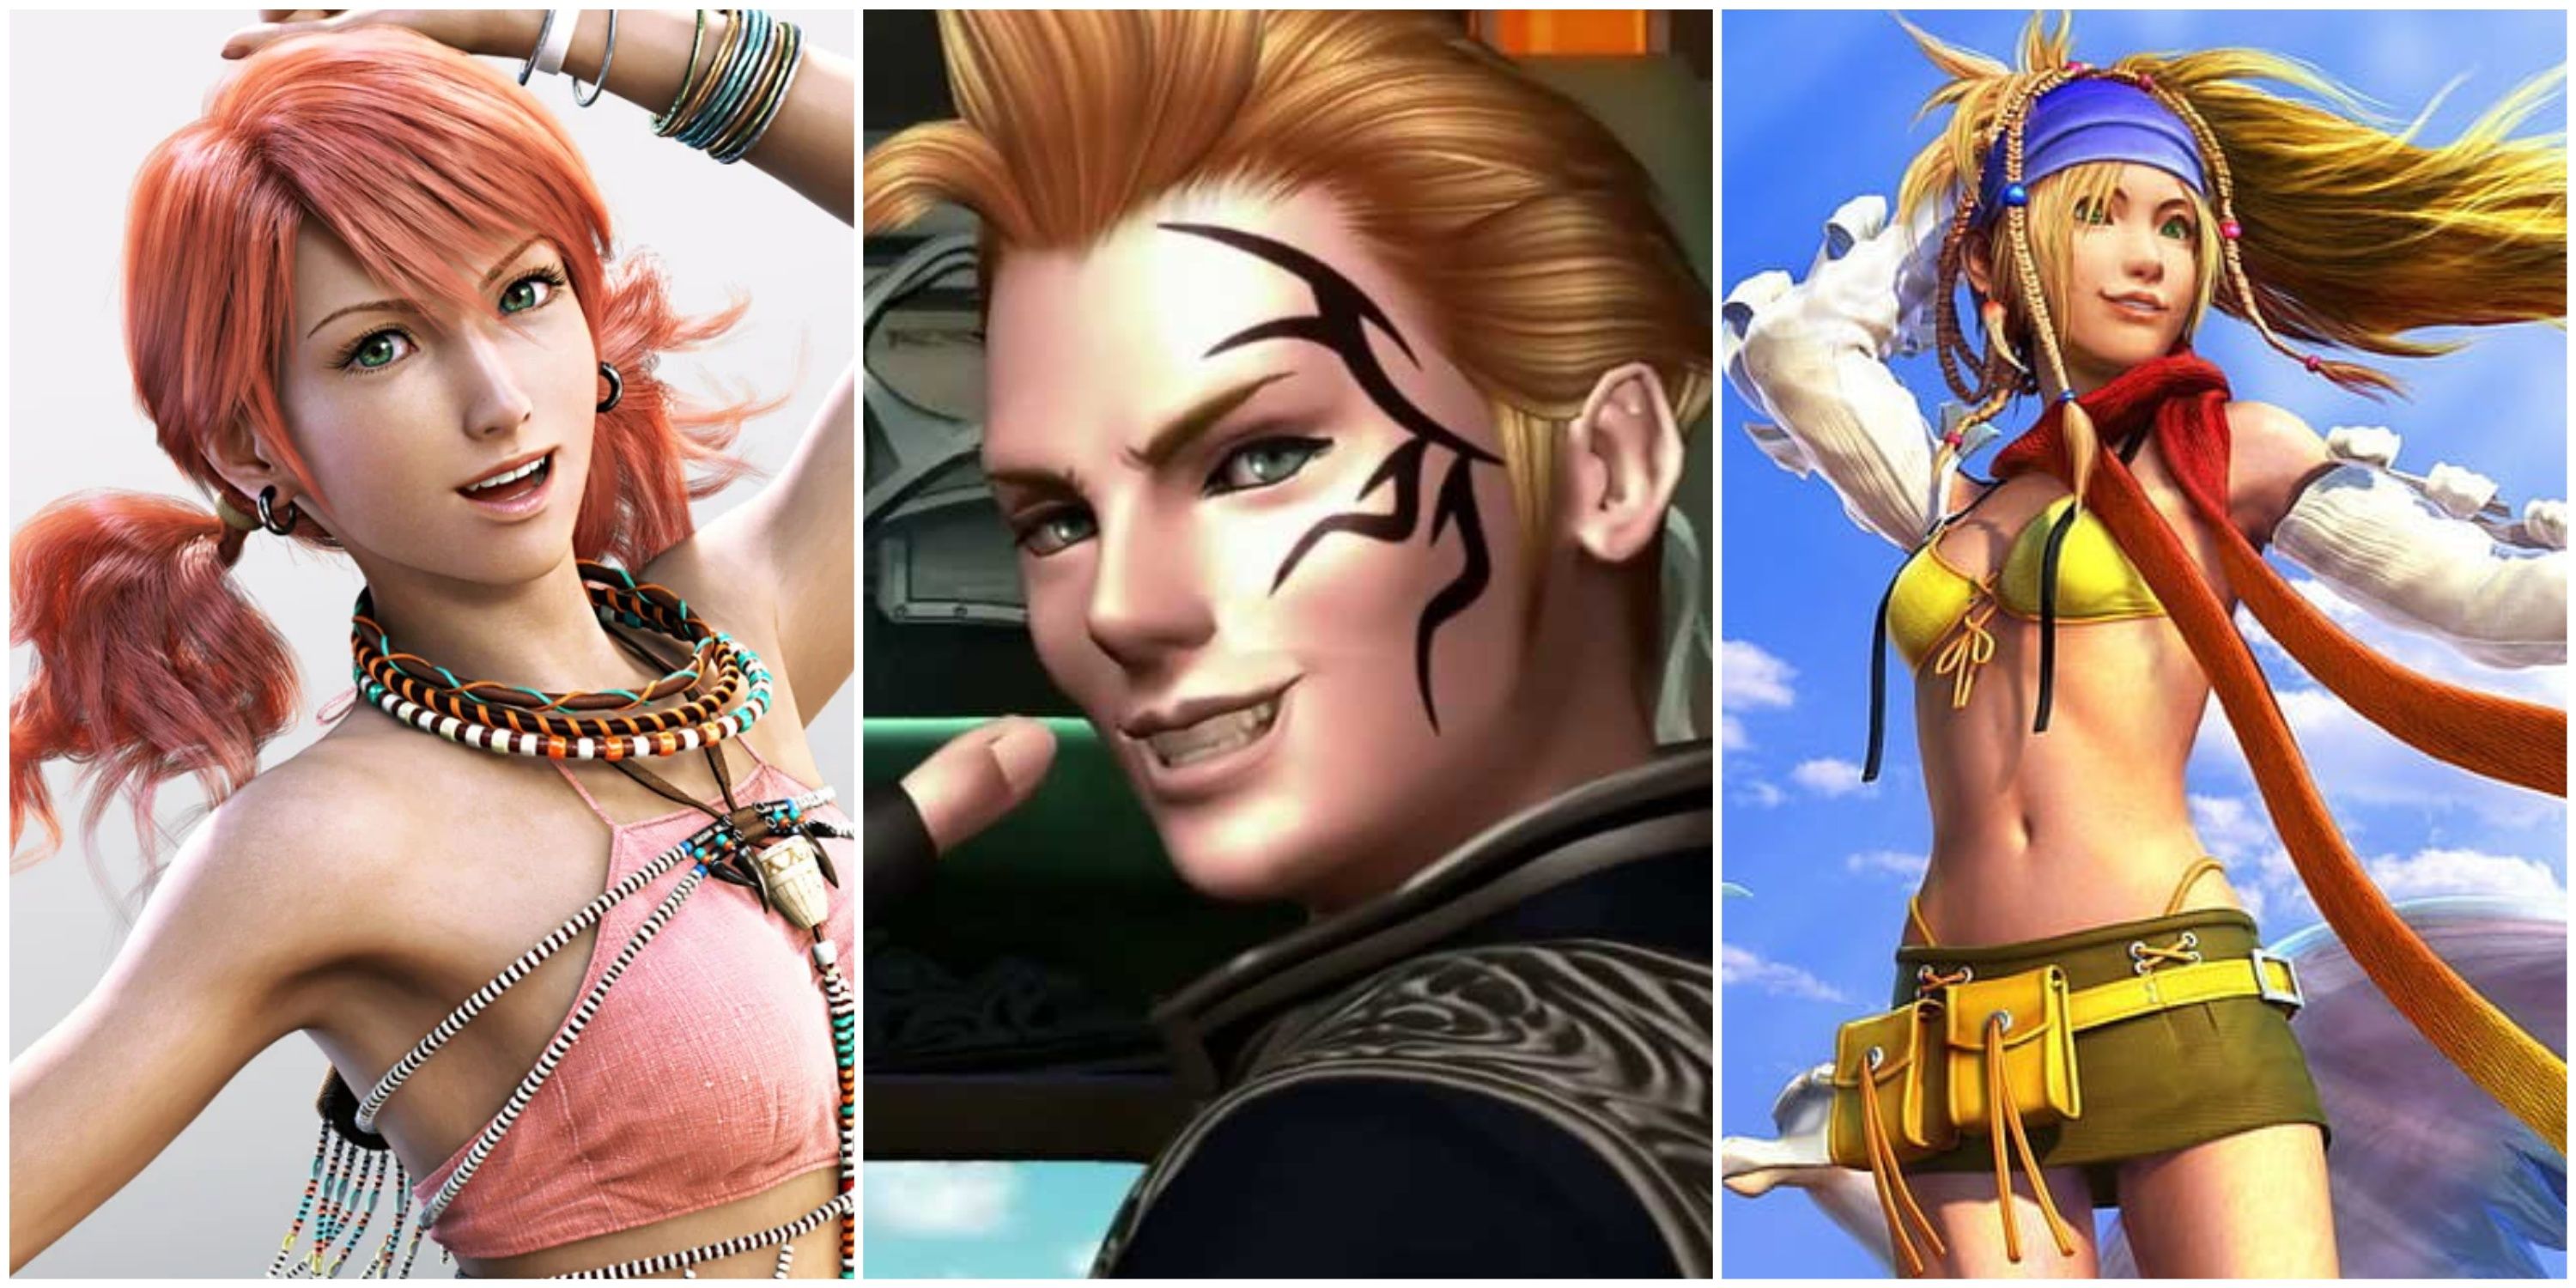 Vanille in Final Fantasy 13, Zell in Final Fantasy 8, and Rikku in Final Fantasy 10-2